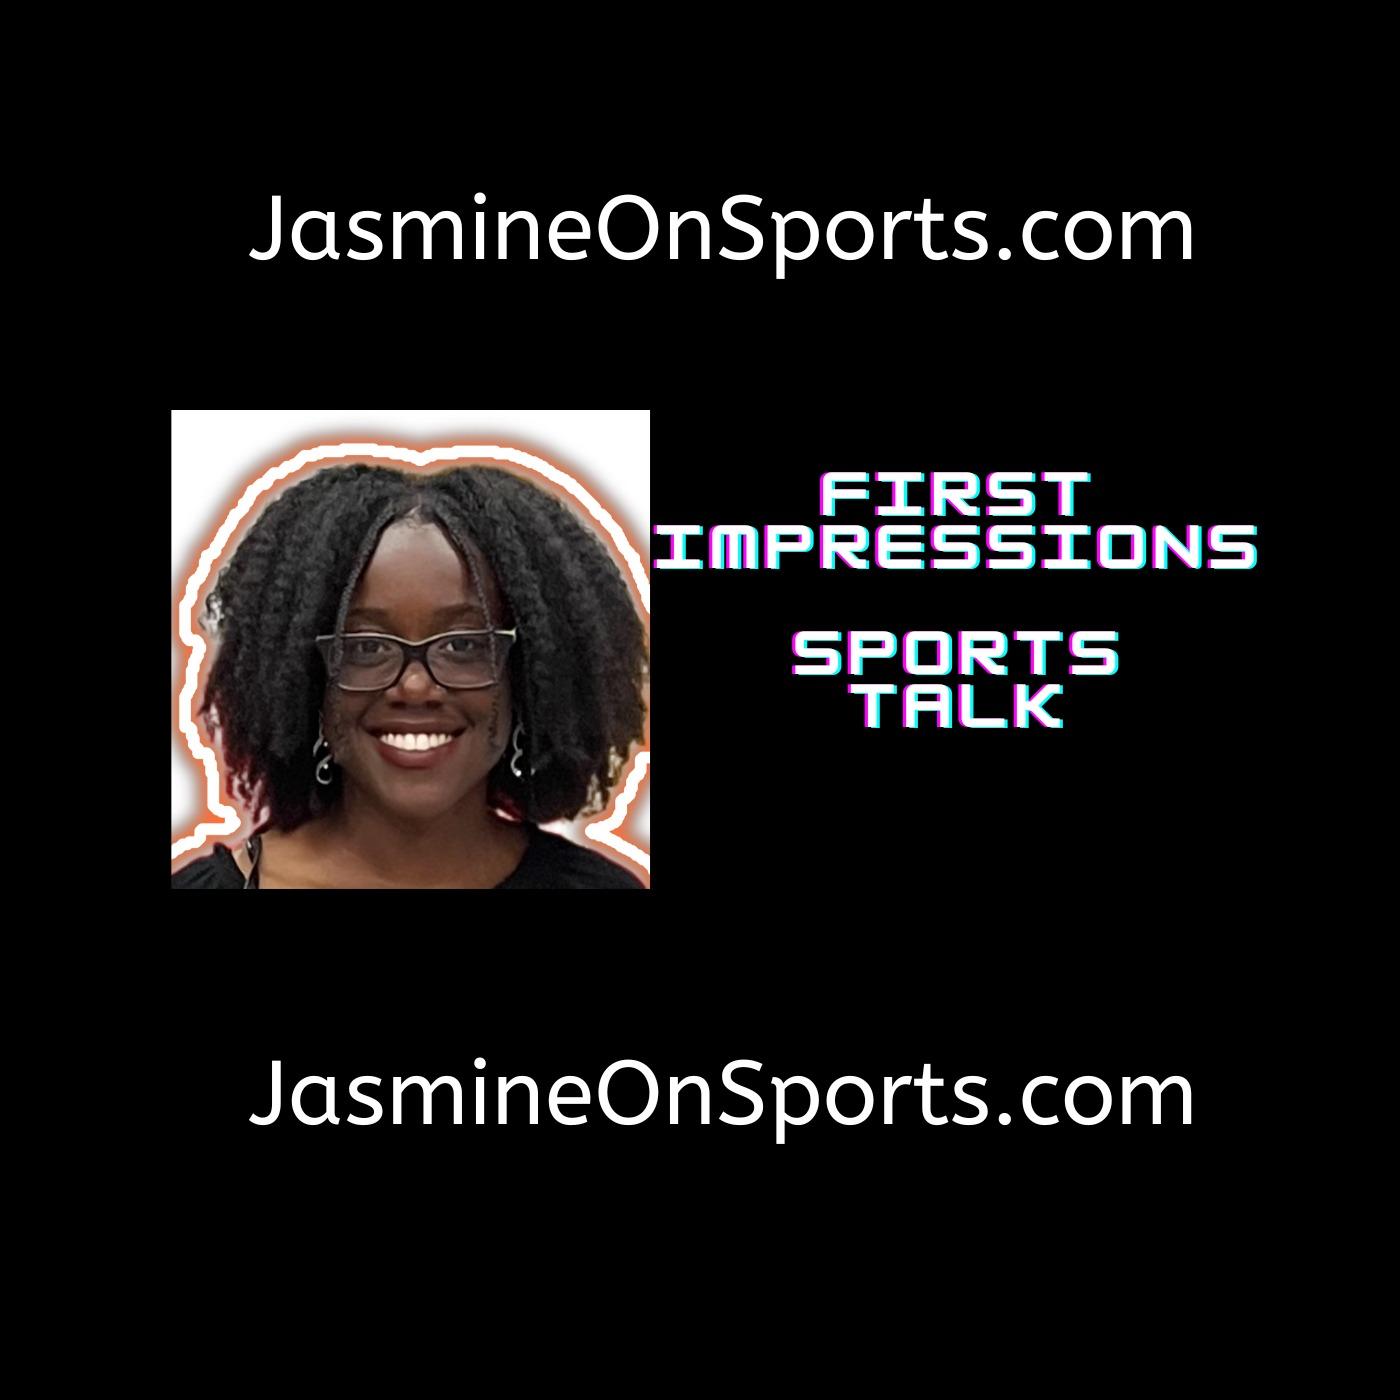 First Impressions Sports Talk